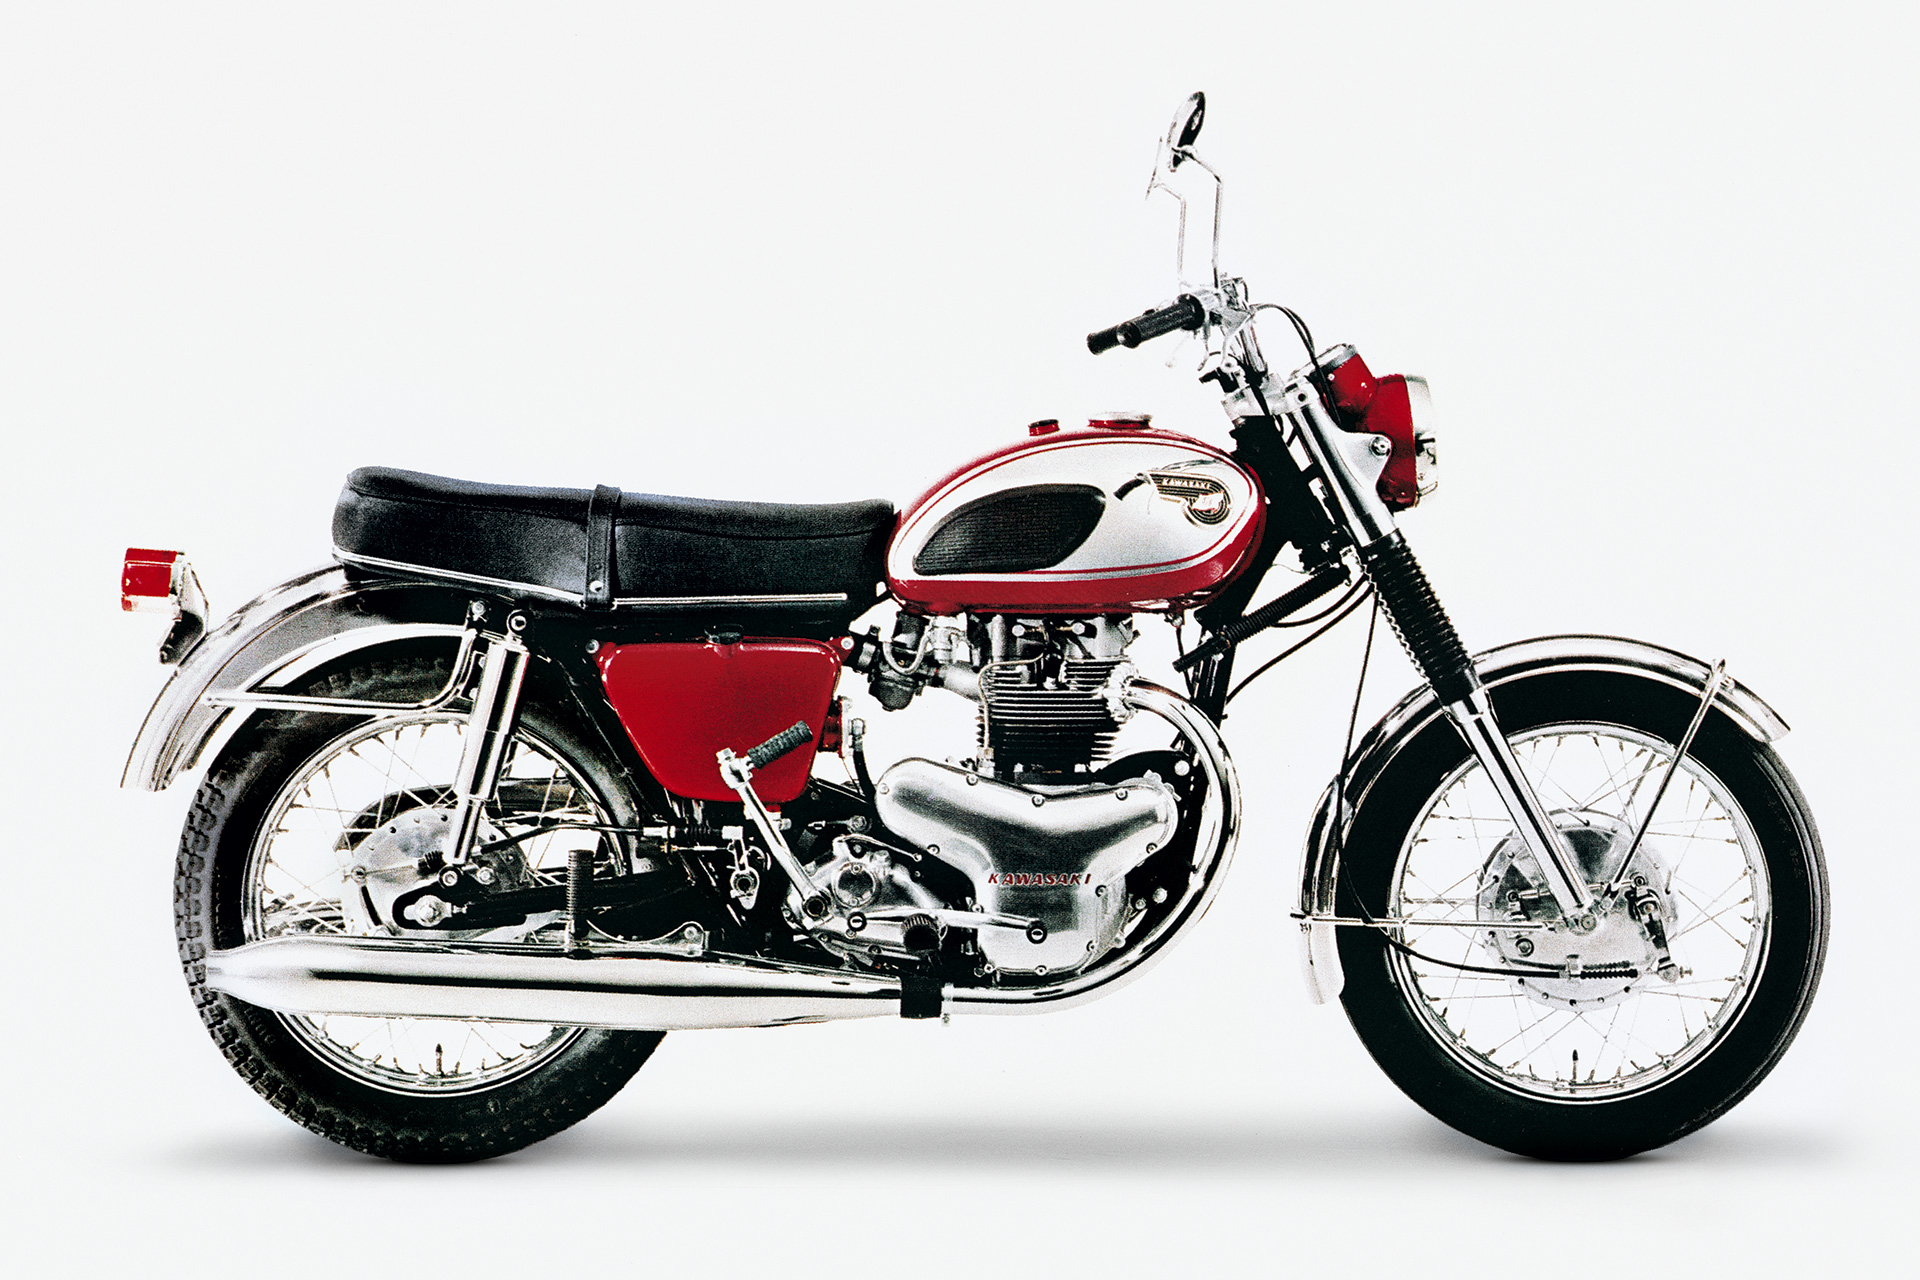 Kawasaki W800 Final Edition, Farewell a Classic | Cycle World